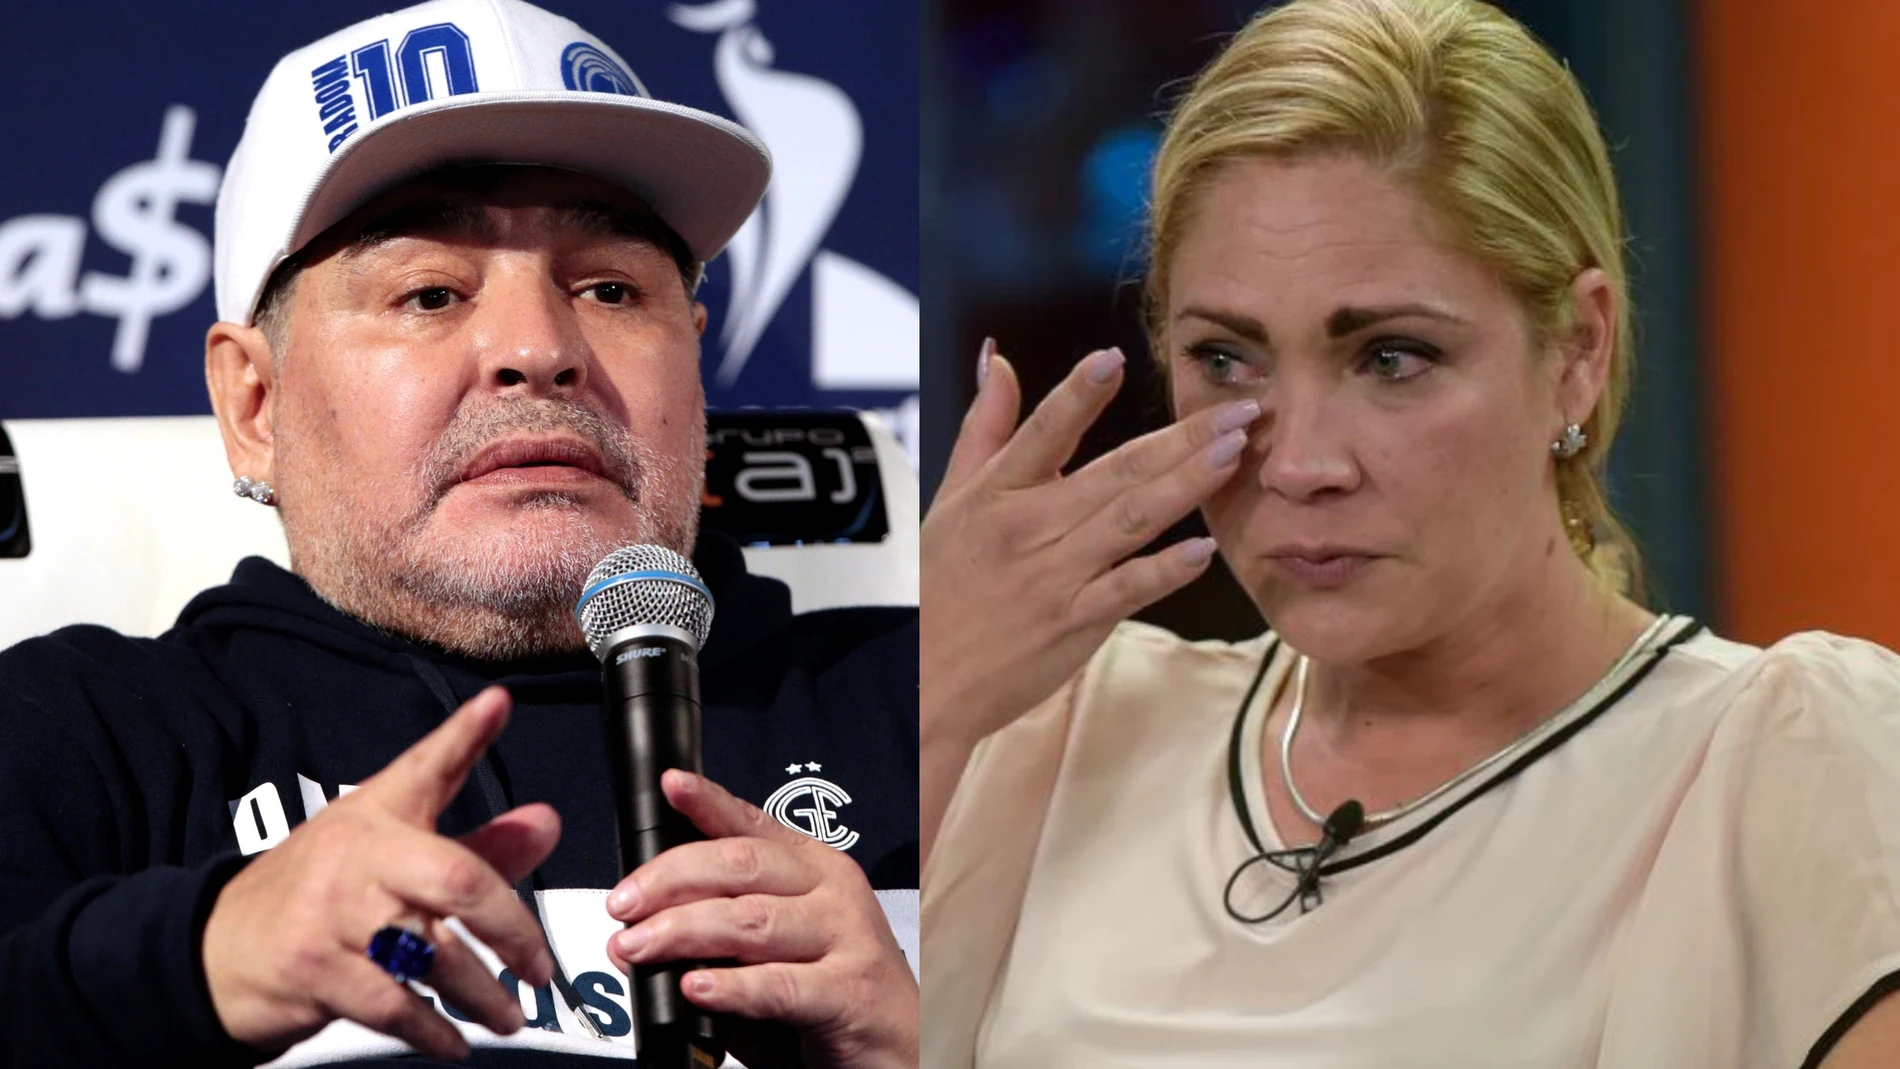 La exnovia de Maradona denuncia que la violó cuando tenía 17 años: "Mi madre lloraba detrás de la puerta"